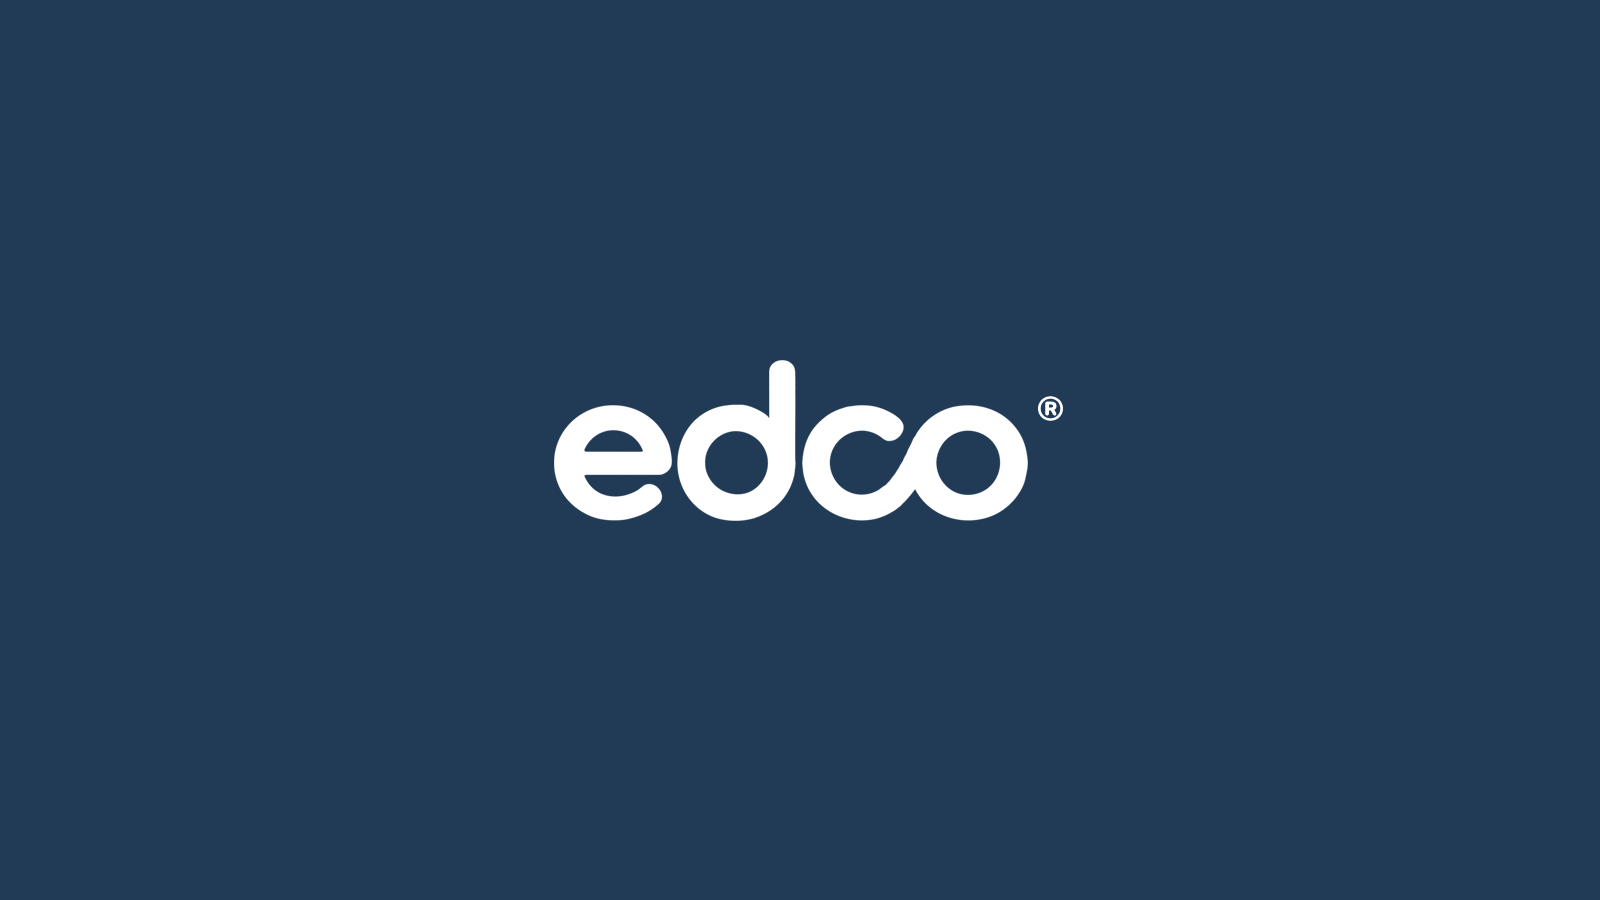 Edco Logo In Progress